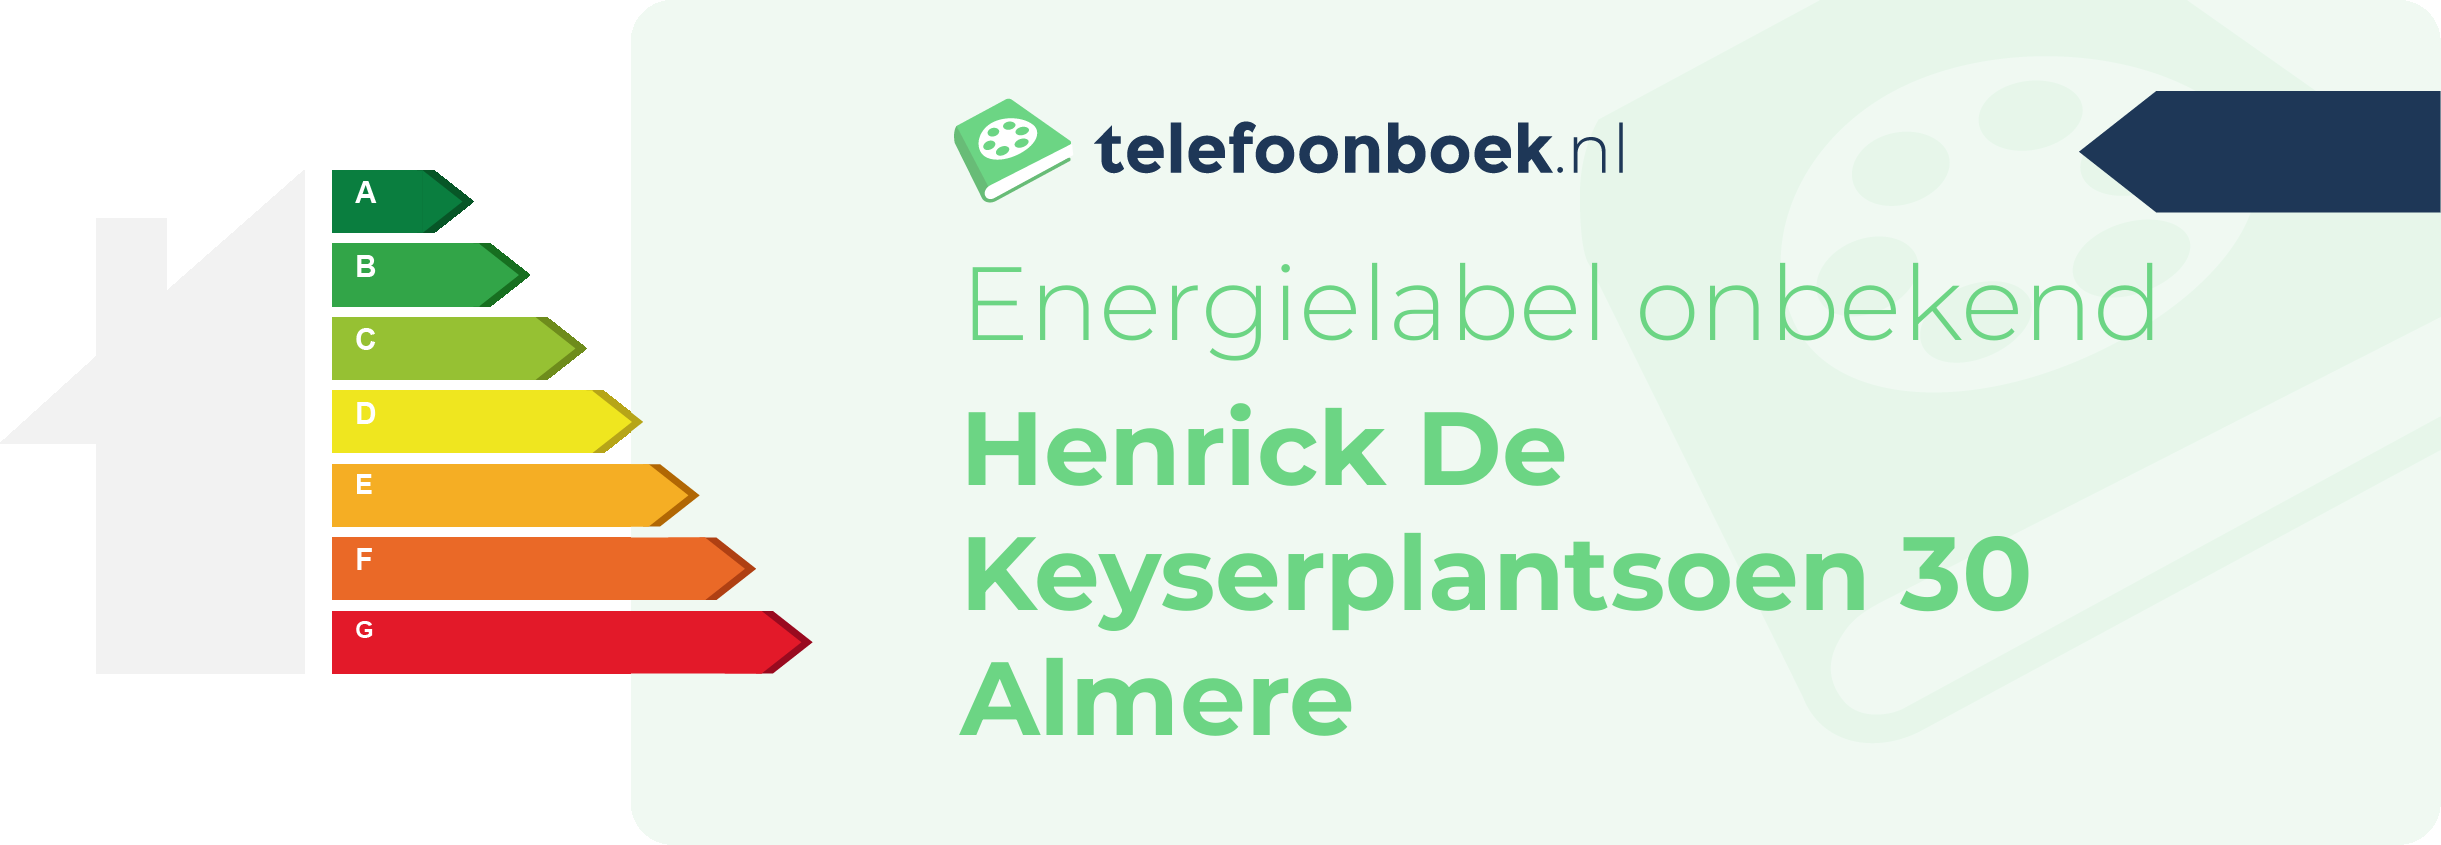 Energielabel Henrick De Keyserplantsoen 30 Almere